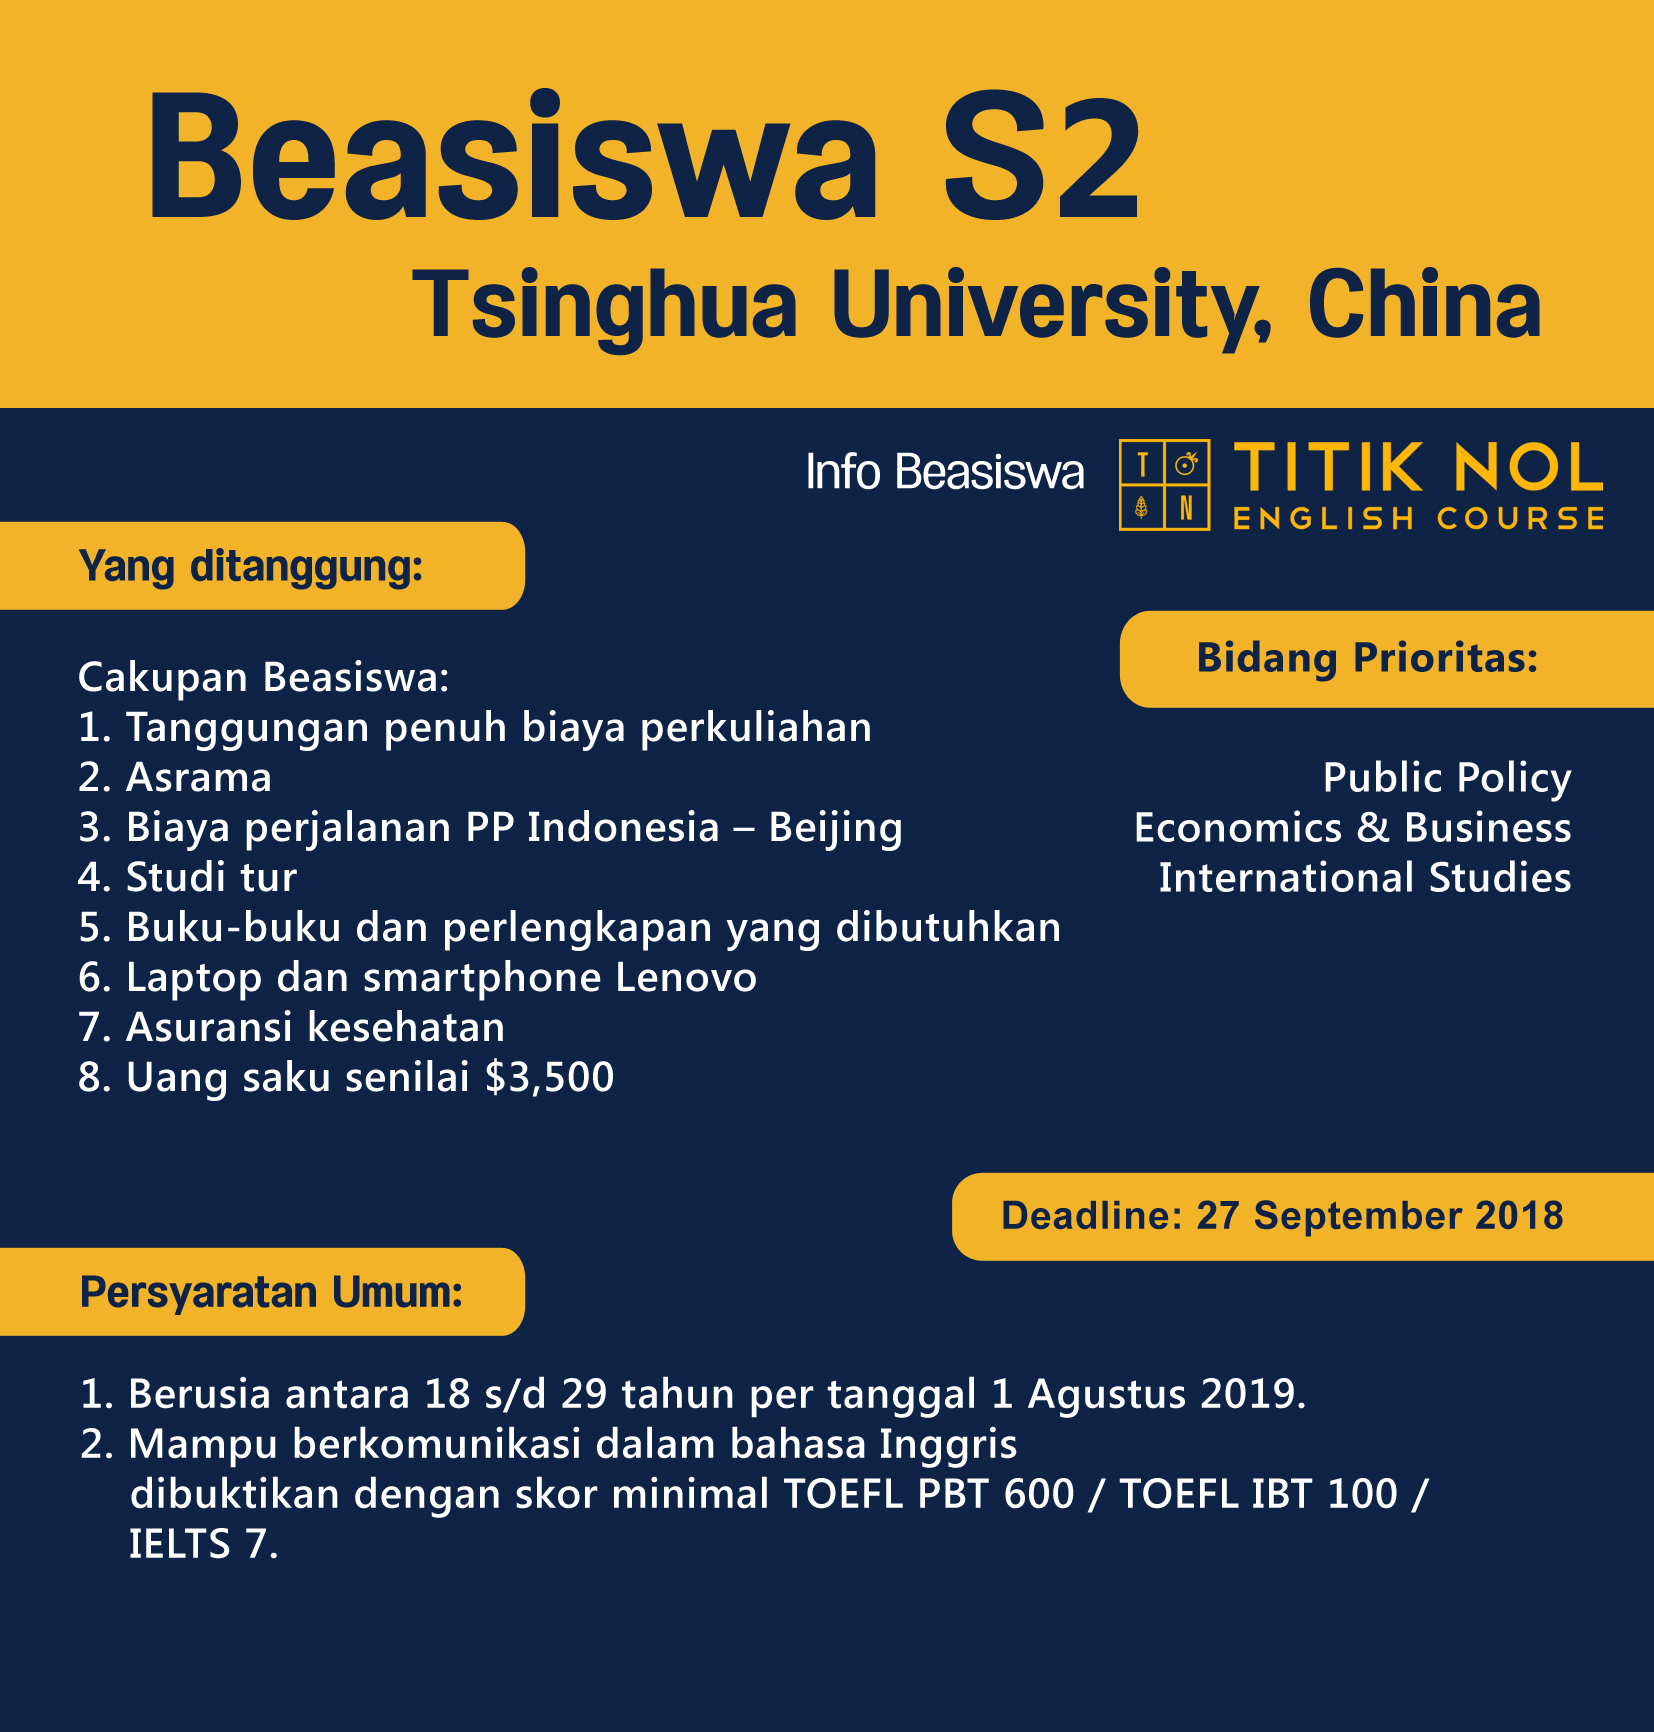 Program beasiswa S2 di Tsinghua University ini ditujukan bagi pelamar internasional termasuk Indonesia yang ingin menempuh kuliah S2 di Beijing Cina